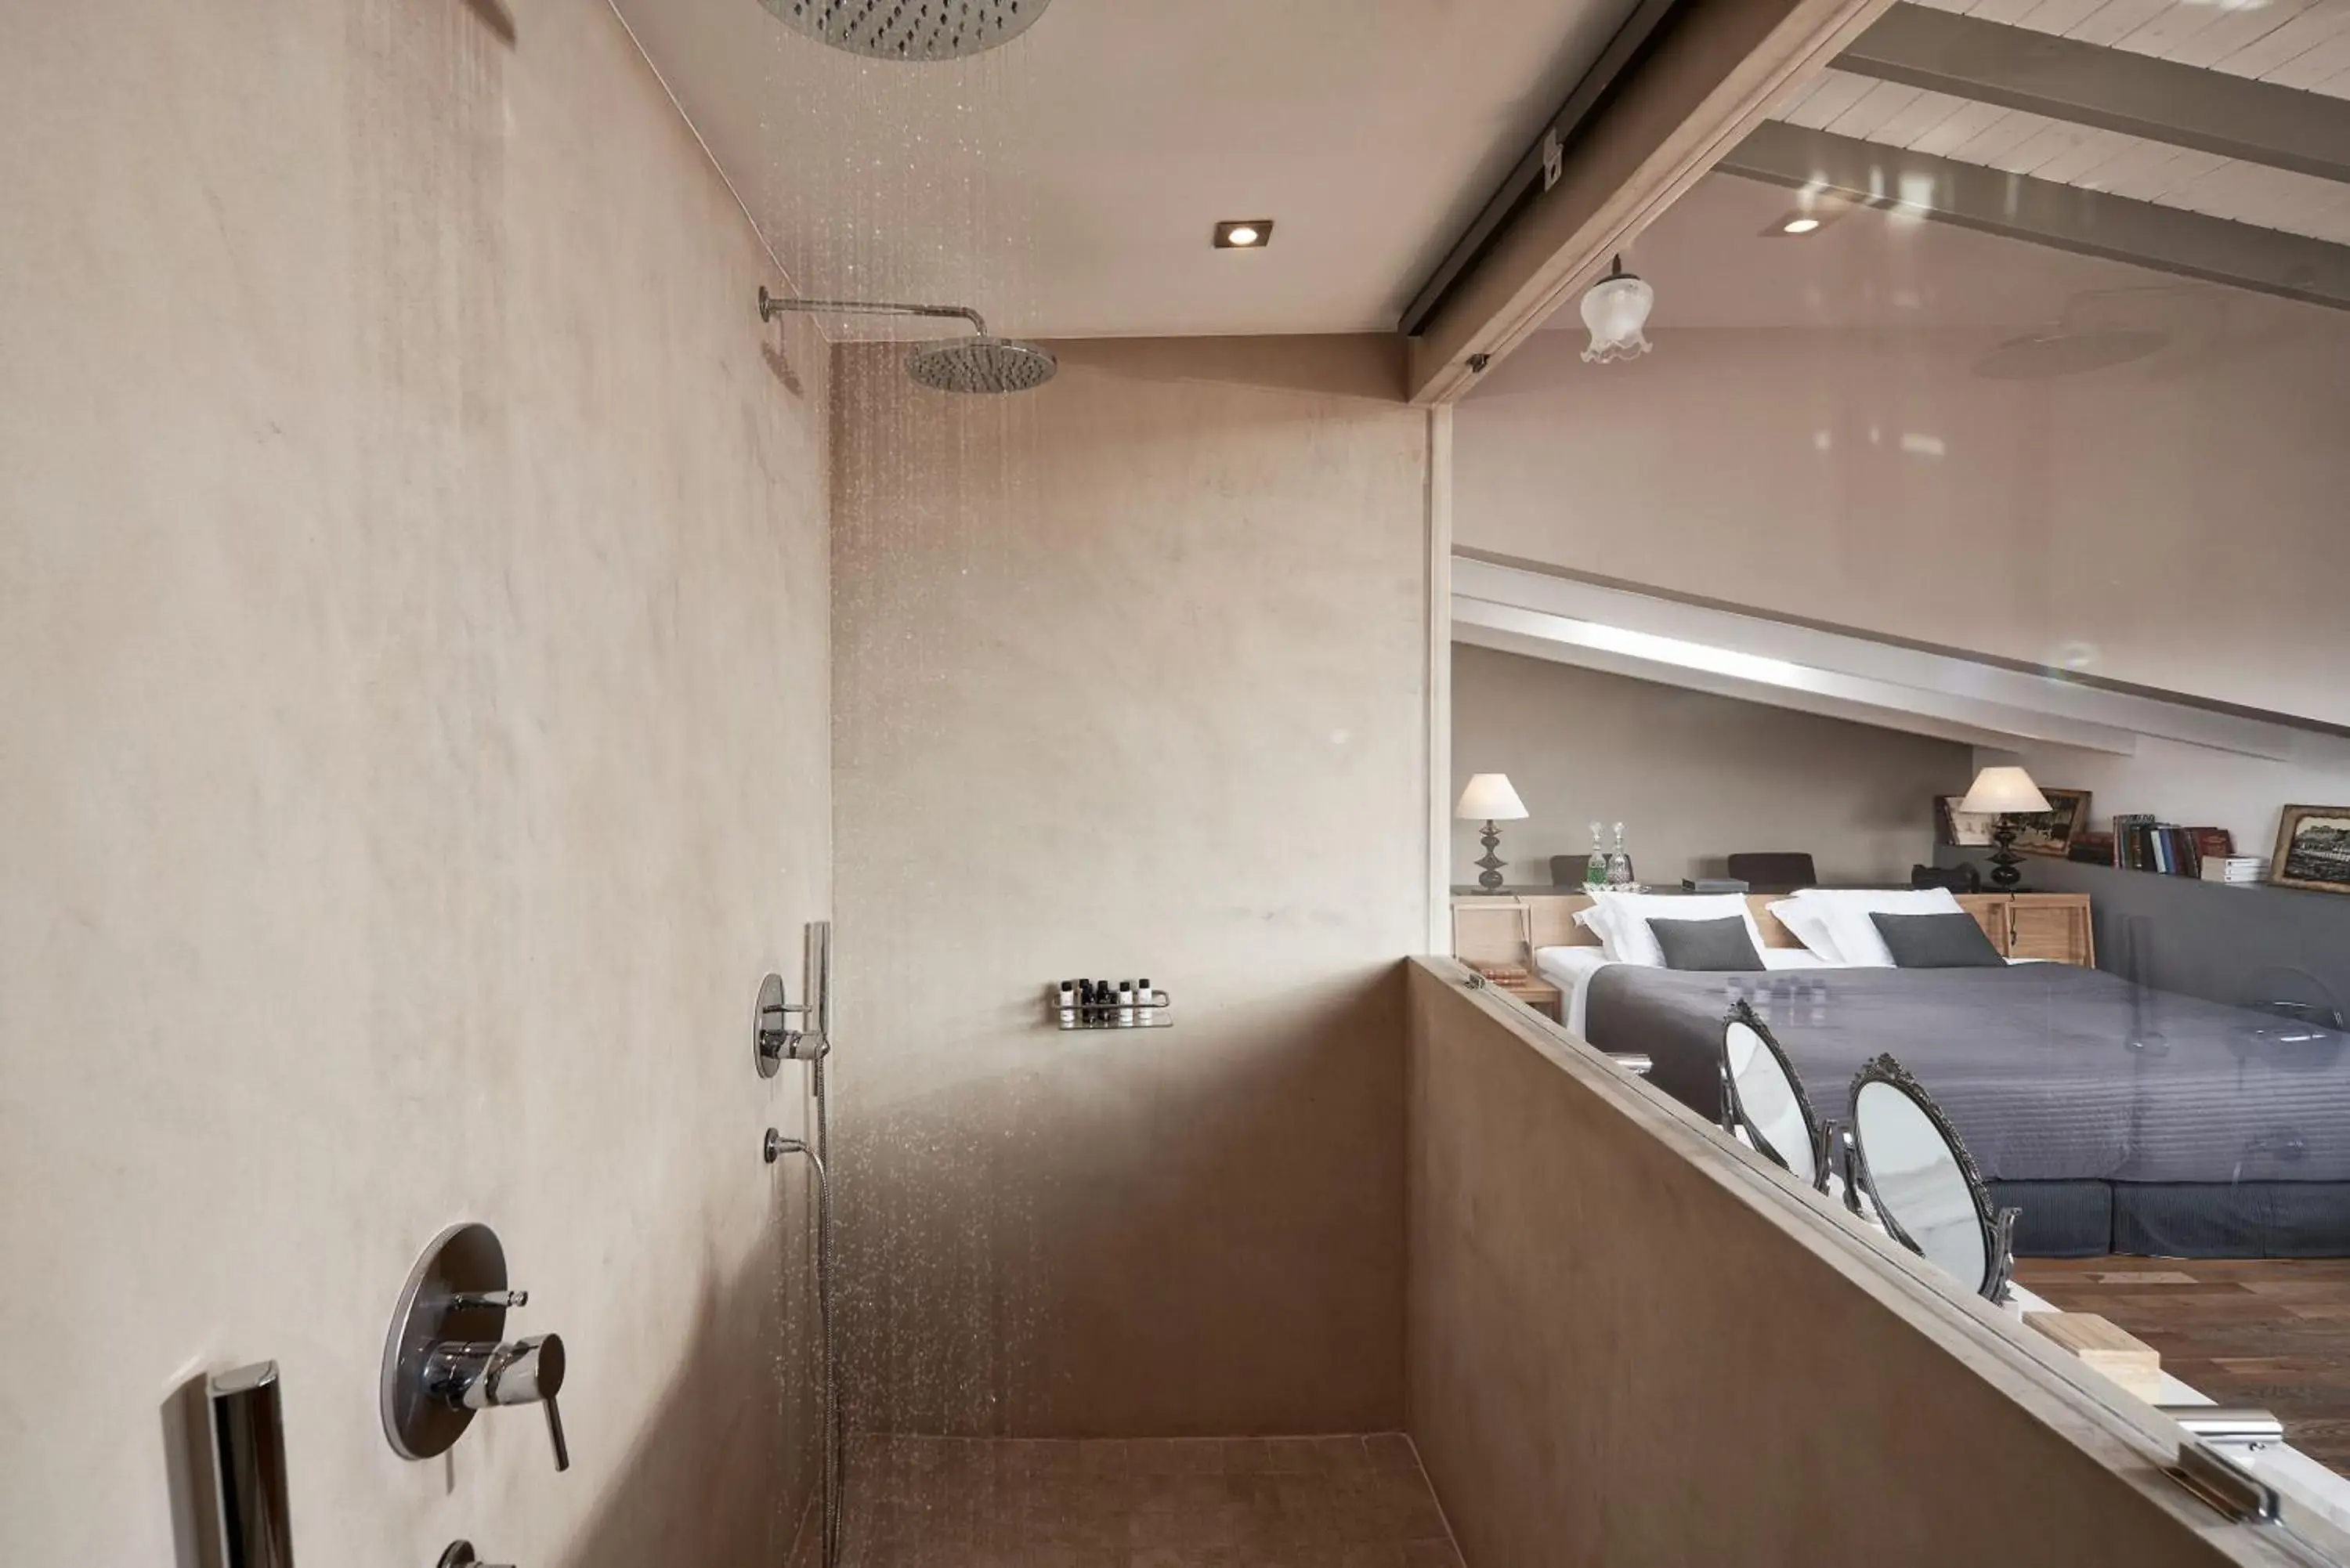 Shower, Bathroom in Emporikon Athens Hotel